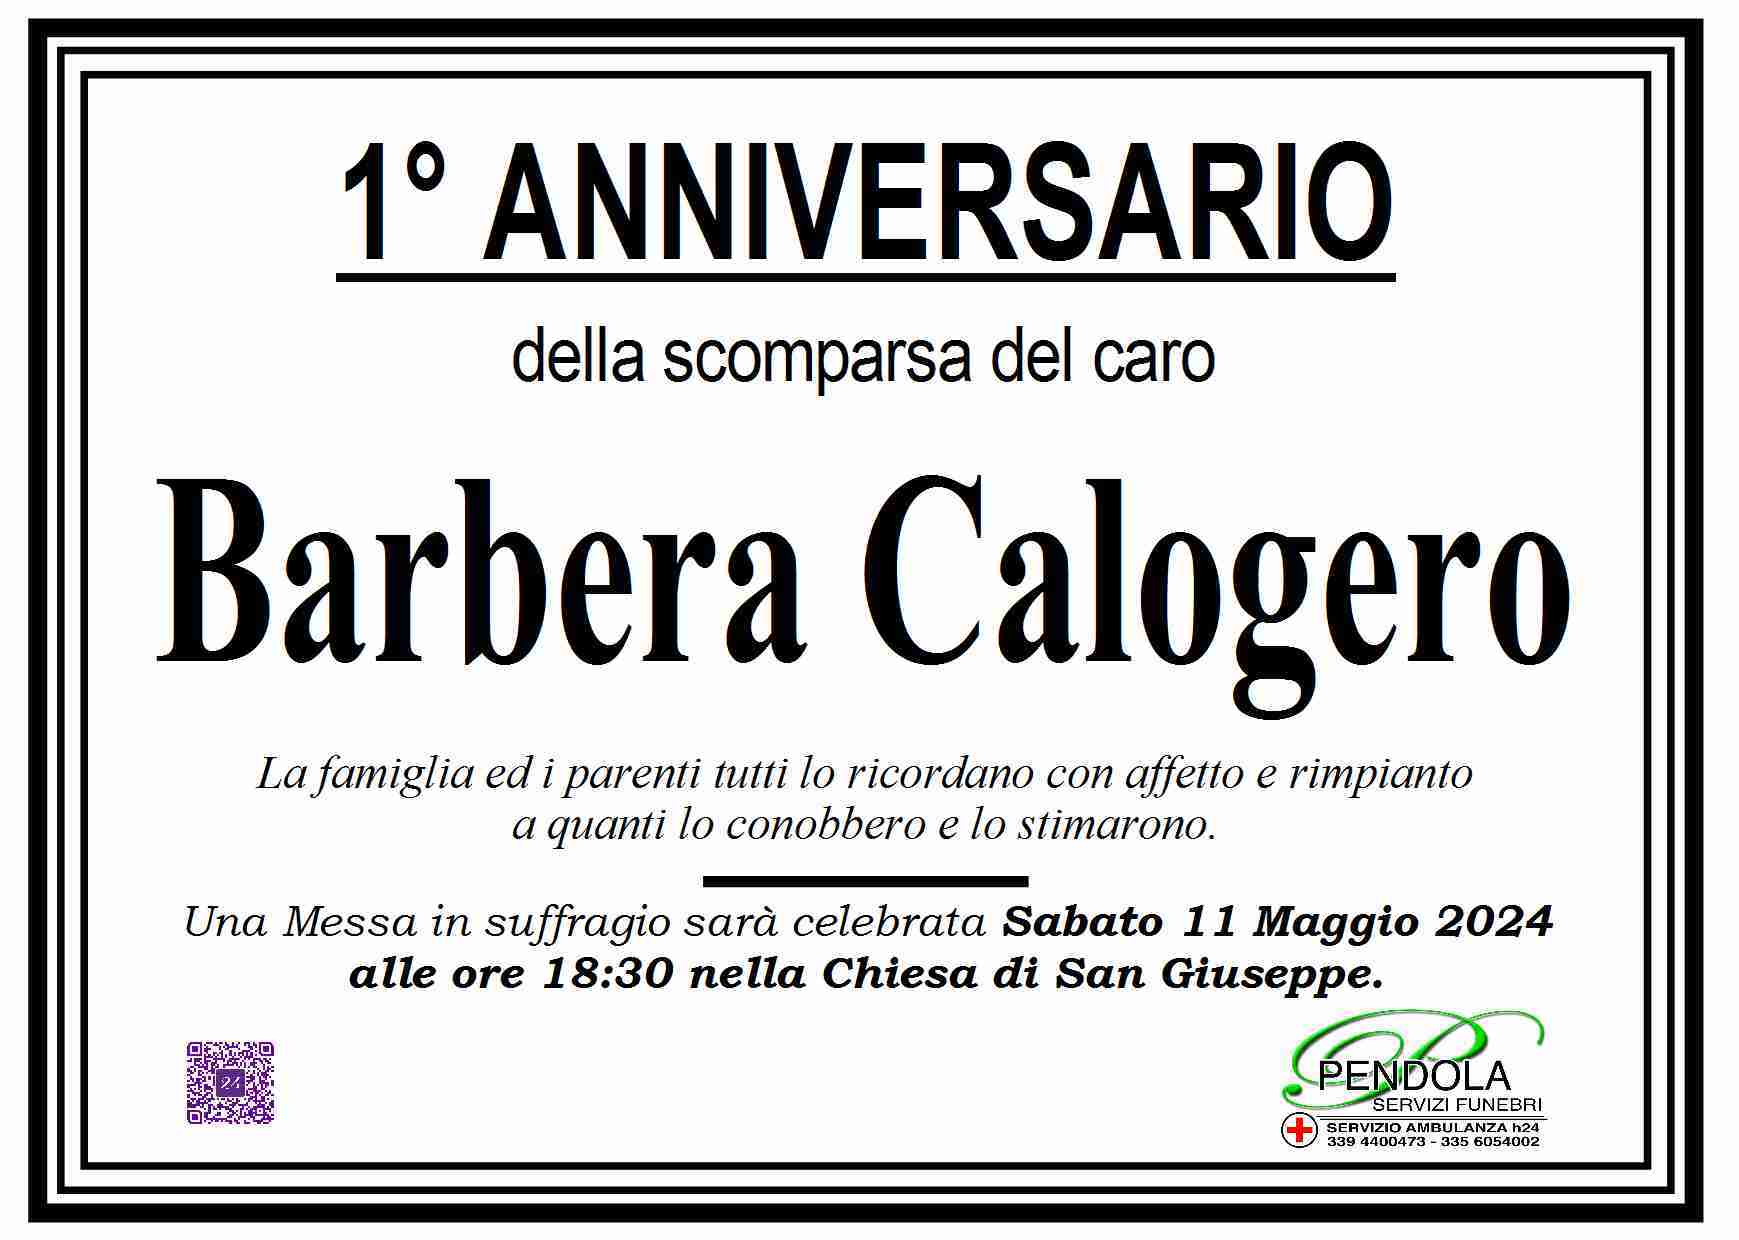 Calogero Barbera